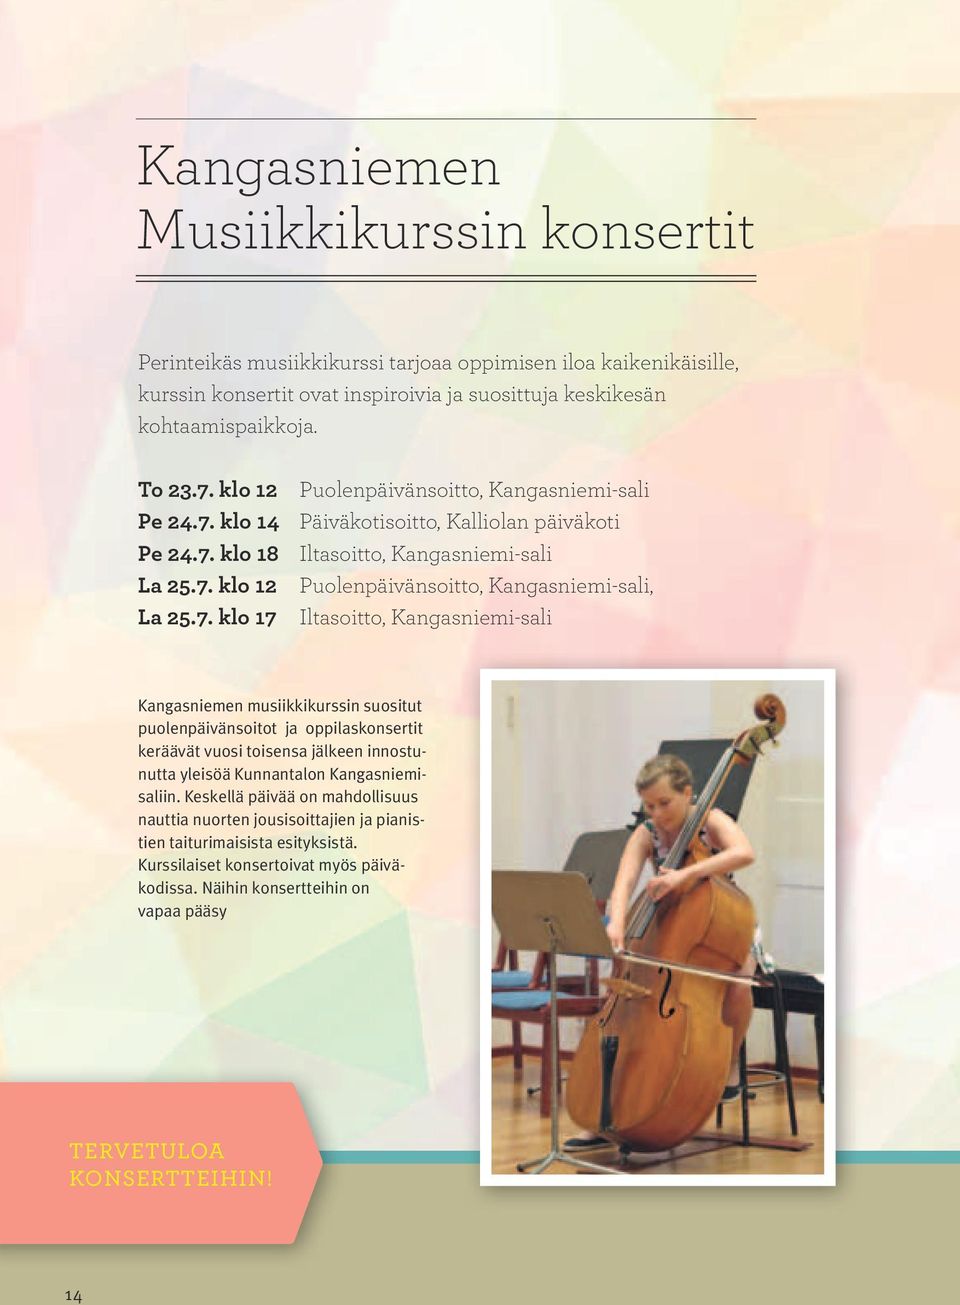 7. klo 17 Iltasoitto, Kangasniemi-sali Kangasniemen musiikkikurssin suositut puolenpäivänsoitot ja oppilaskonsertit keräävät vuosi toisensa jälkeen innostunutta yleisöä Kunnantalon Kangasniemisaliin.